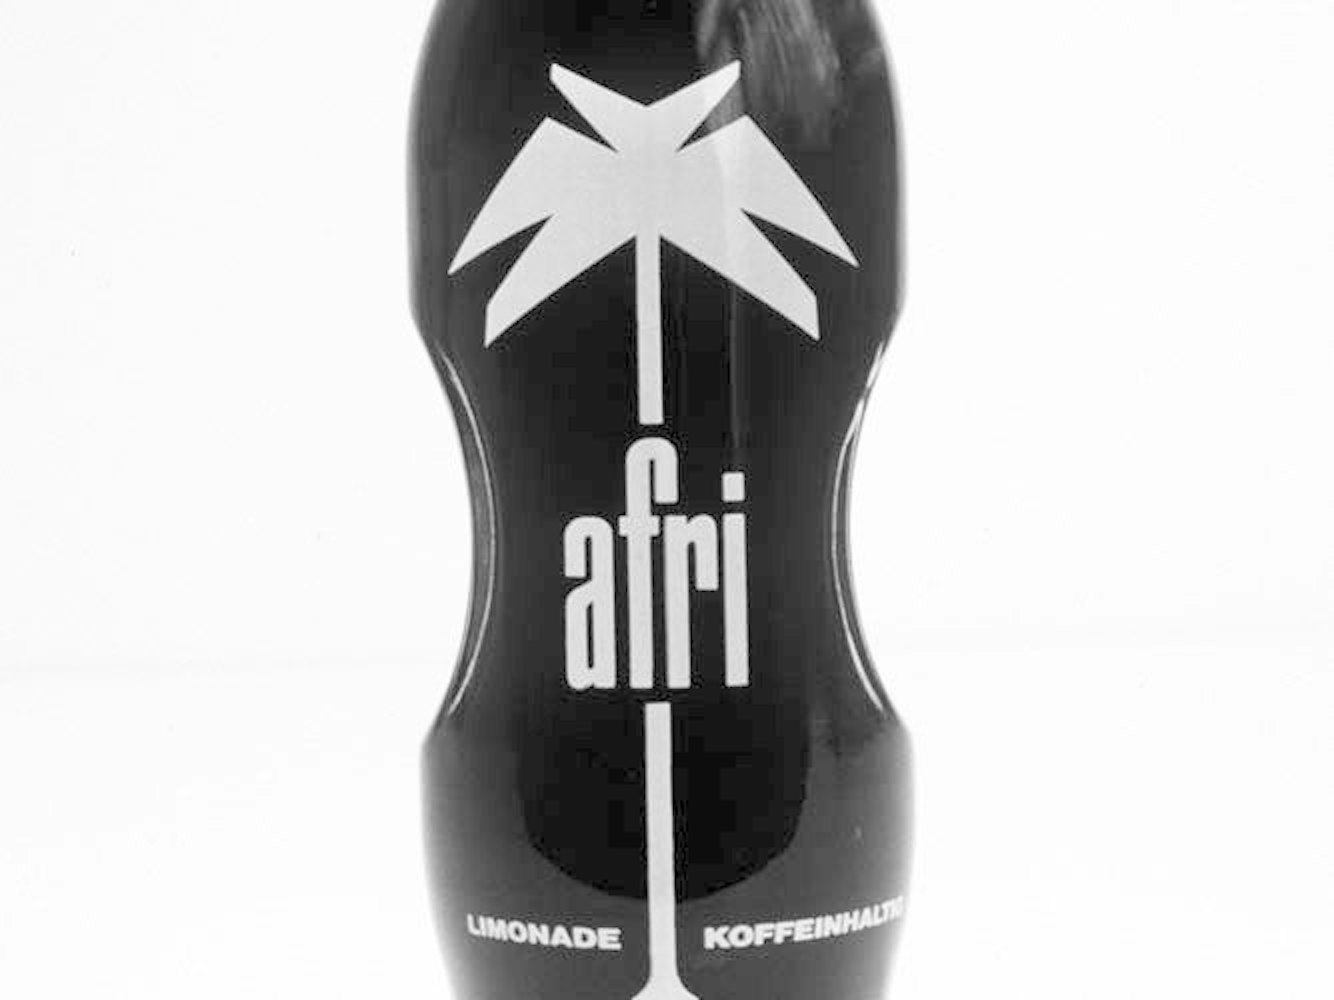 Fritz-Kola und Afri Cola haben mit 25 Milligramm pro 100 Milliliter einen etwa dreimal höheren Koffeinwert als die gängigen Marken Coca Cola und Pepsi.